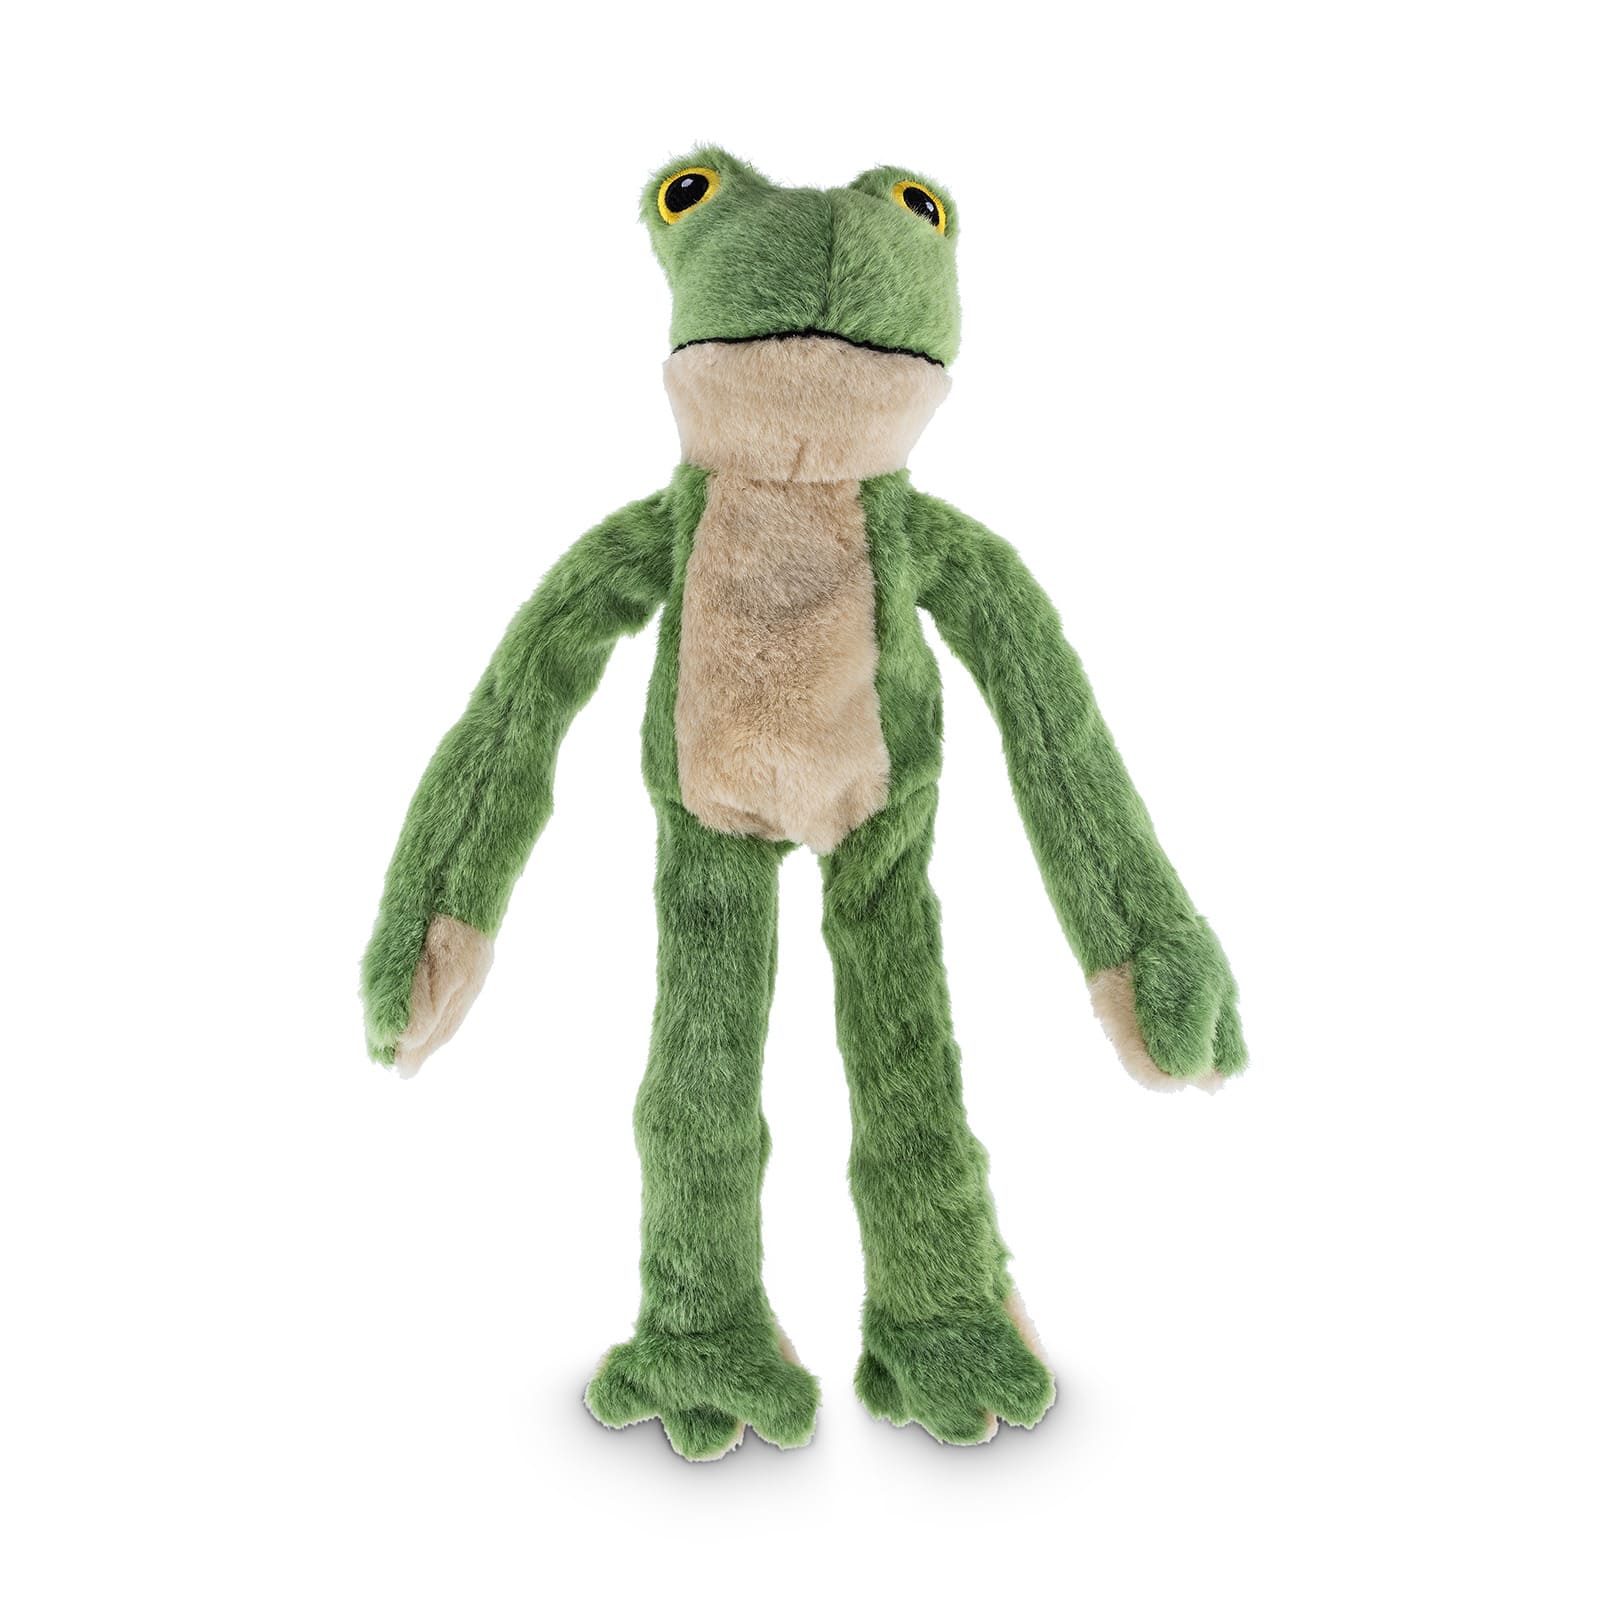 Grüner Frosch mit langen Armen und Beinen.